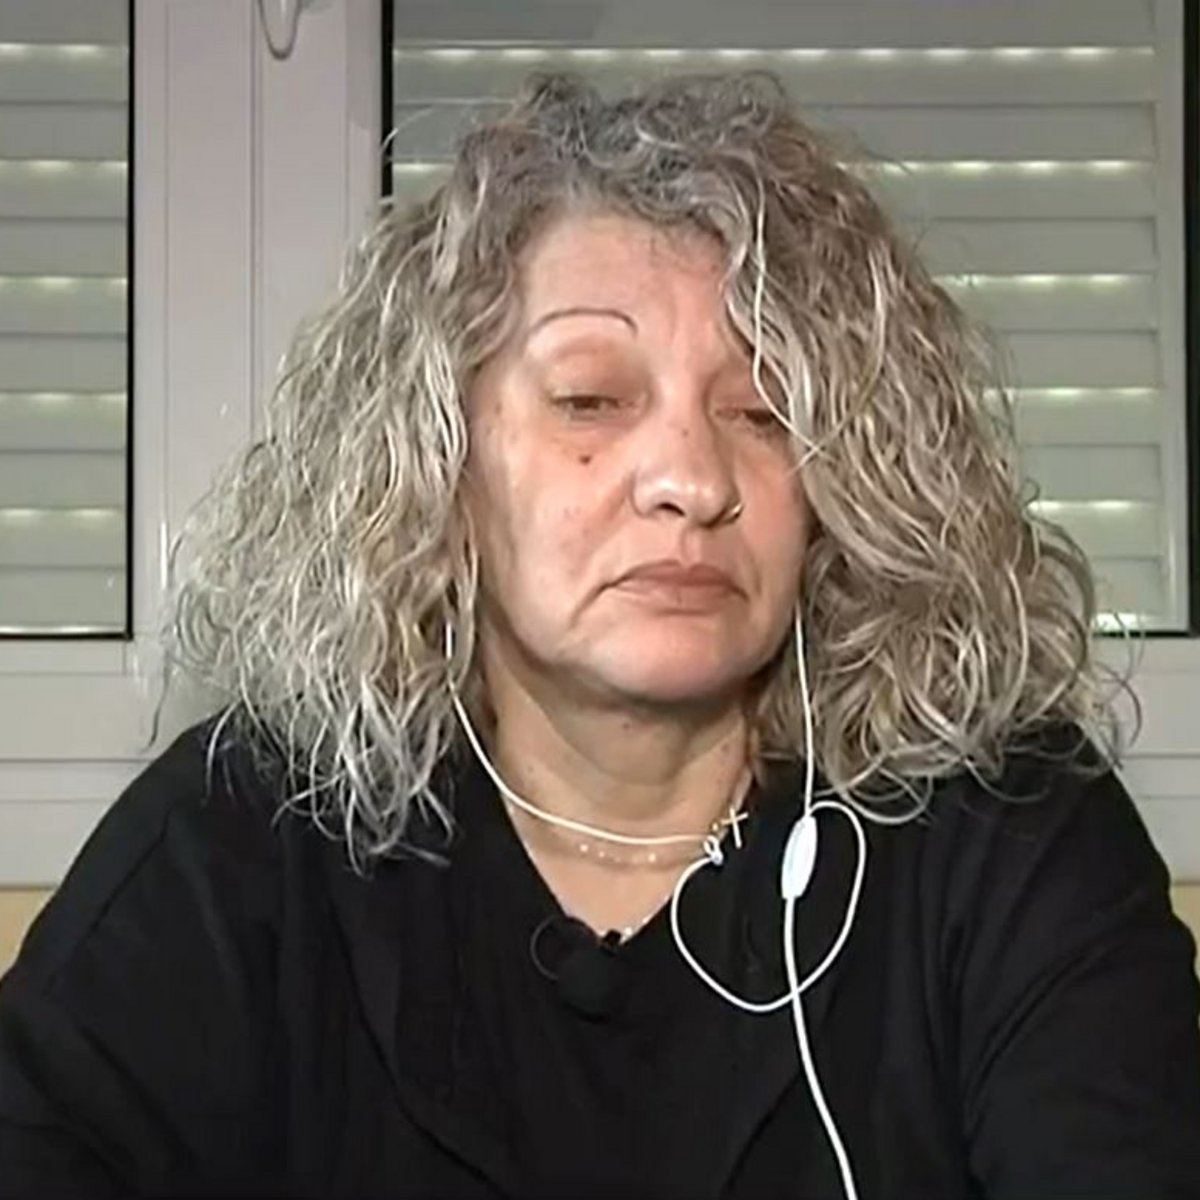 Ρούλα Πισπιρίγκου: Βρίσκεται στο κελί και η μητέρα της πουλάει το σπίτι της!